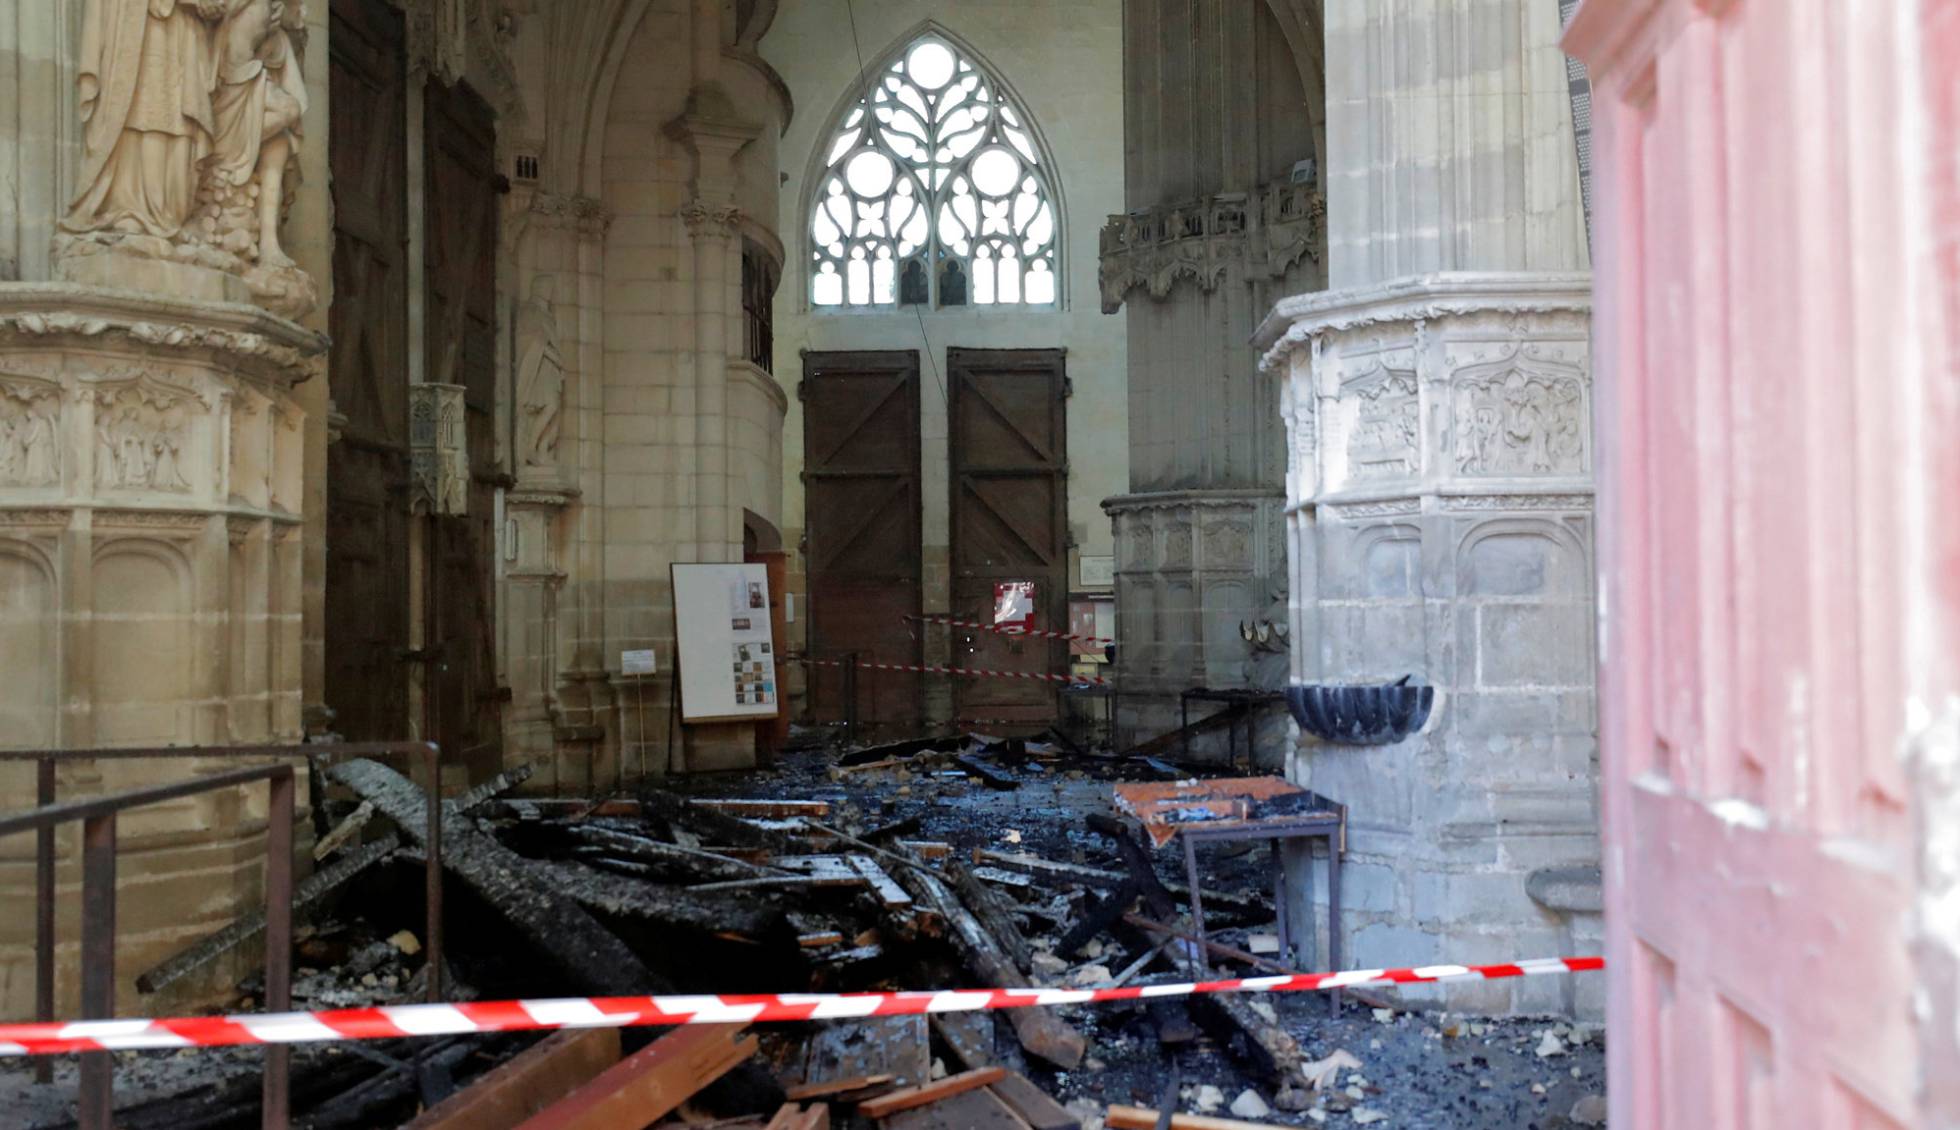 Fotos: El incendio en la catedral de Nantes, en imágenes | Cultura ...